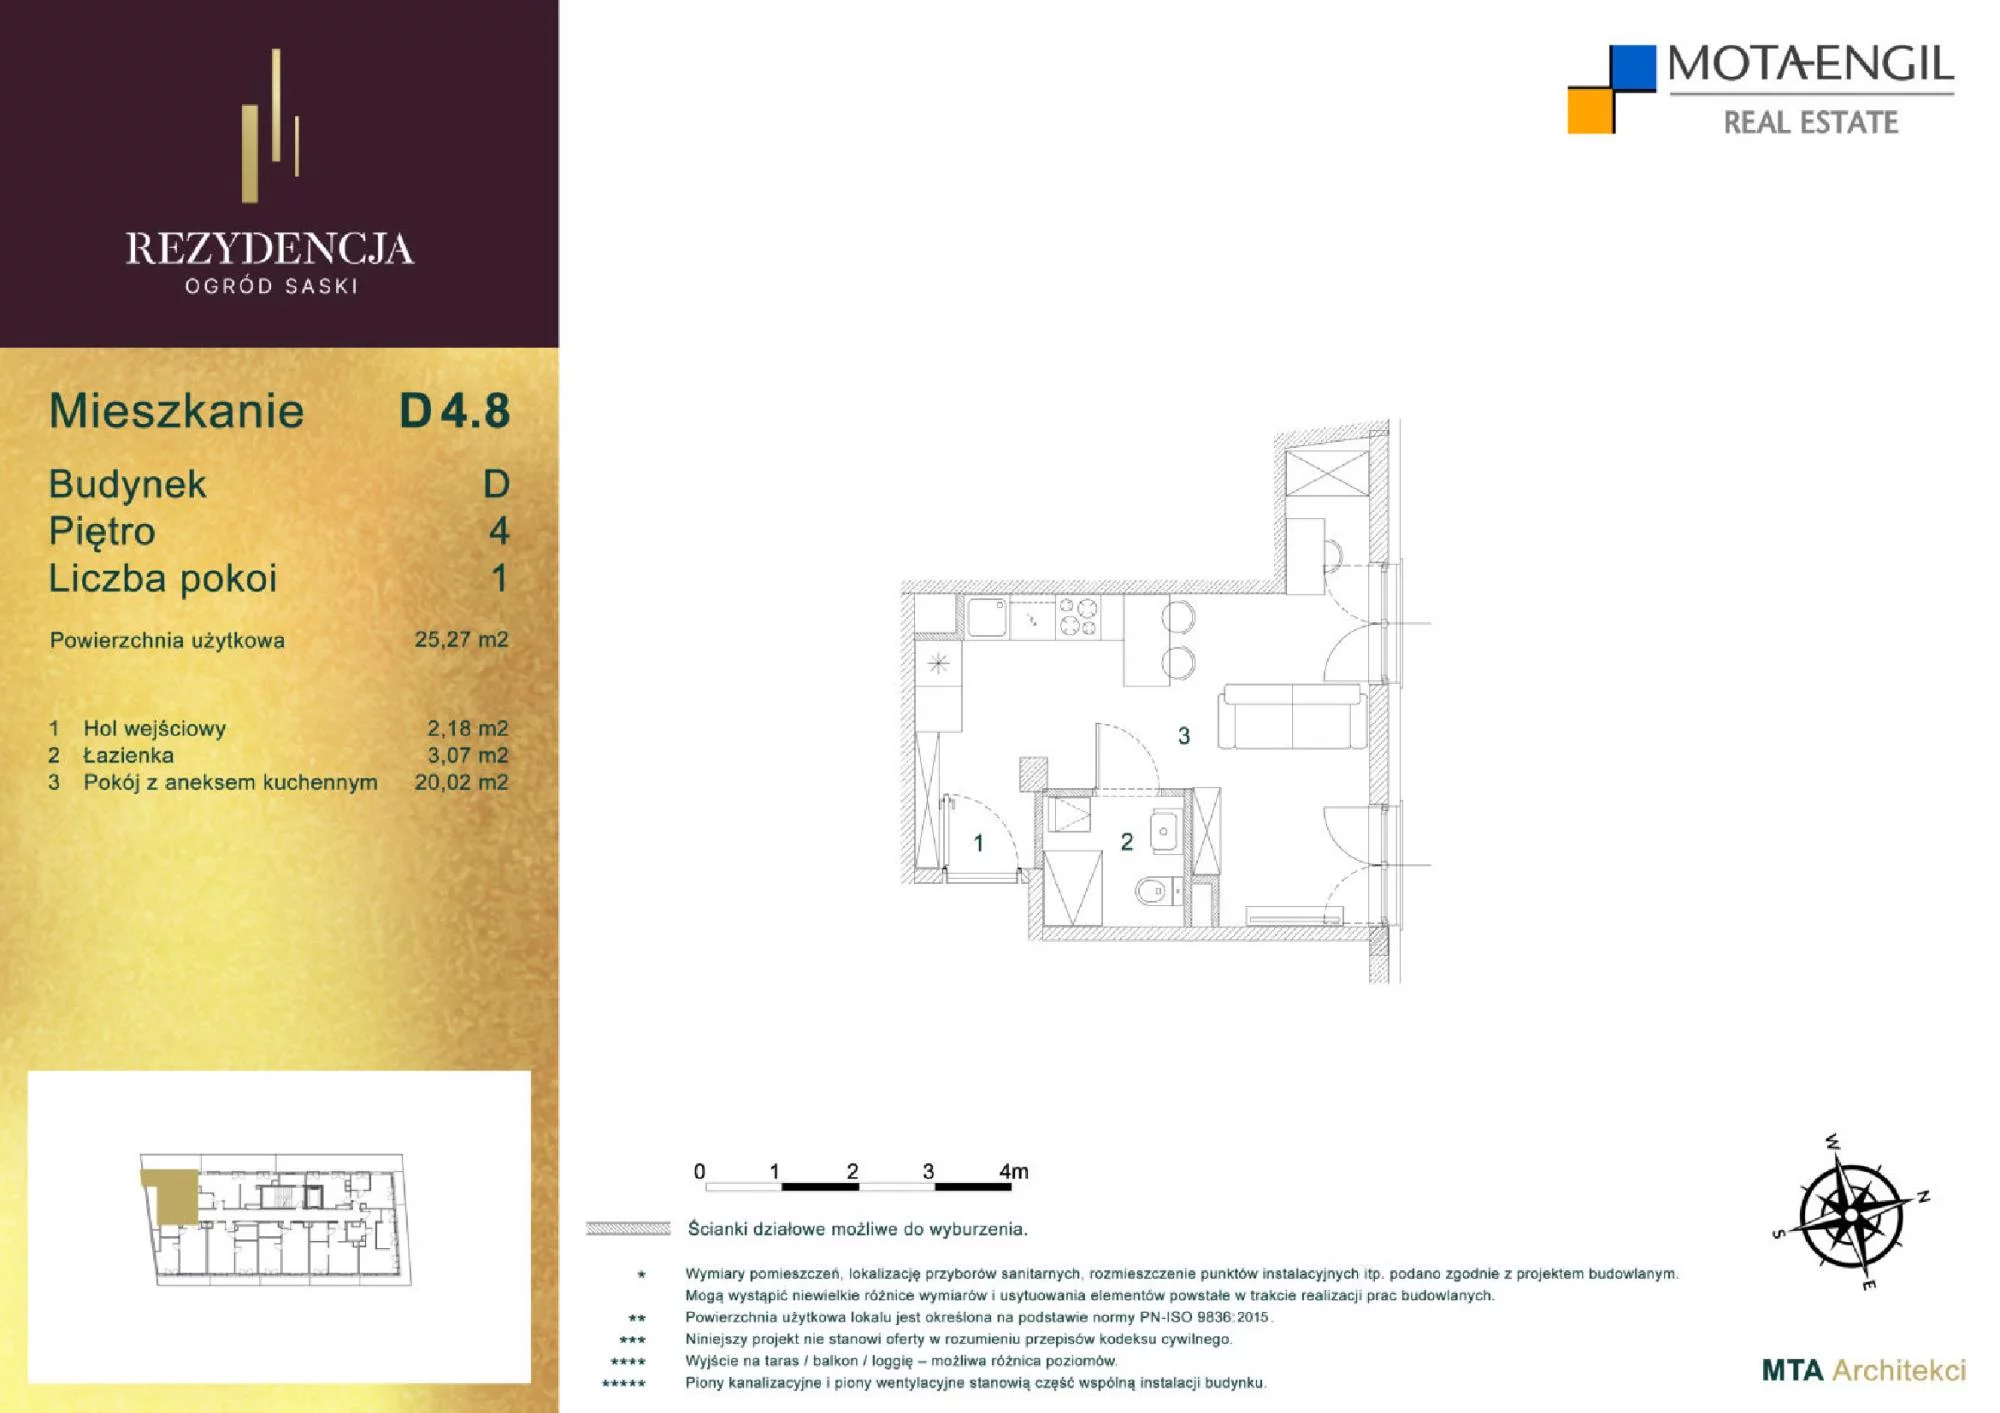 Mieszkanie 25,27 m², piętro 4, oferta nr D4.8, Rezydencja Ogród Saski, Lublin, Wieniawa, ul. Jasna 7, 7A